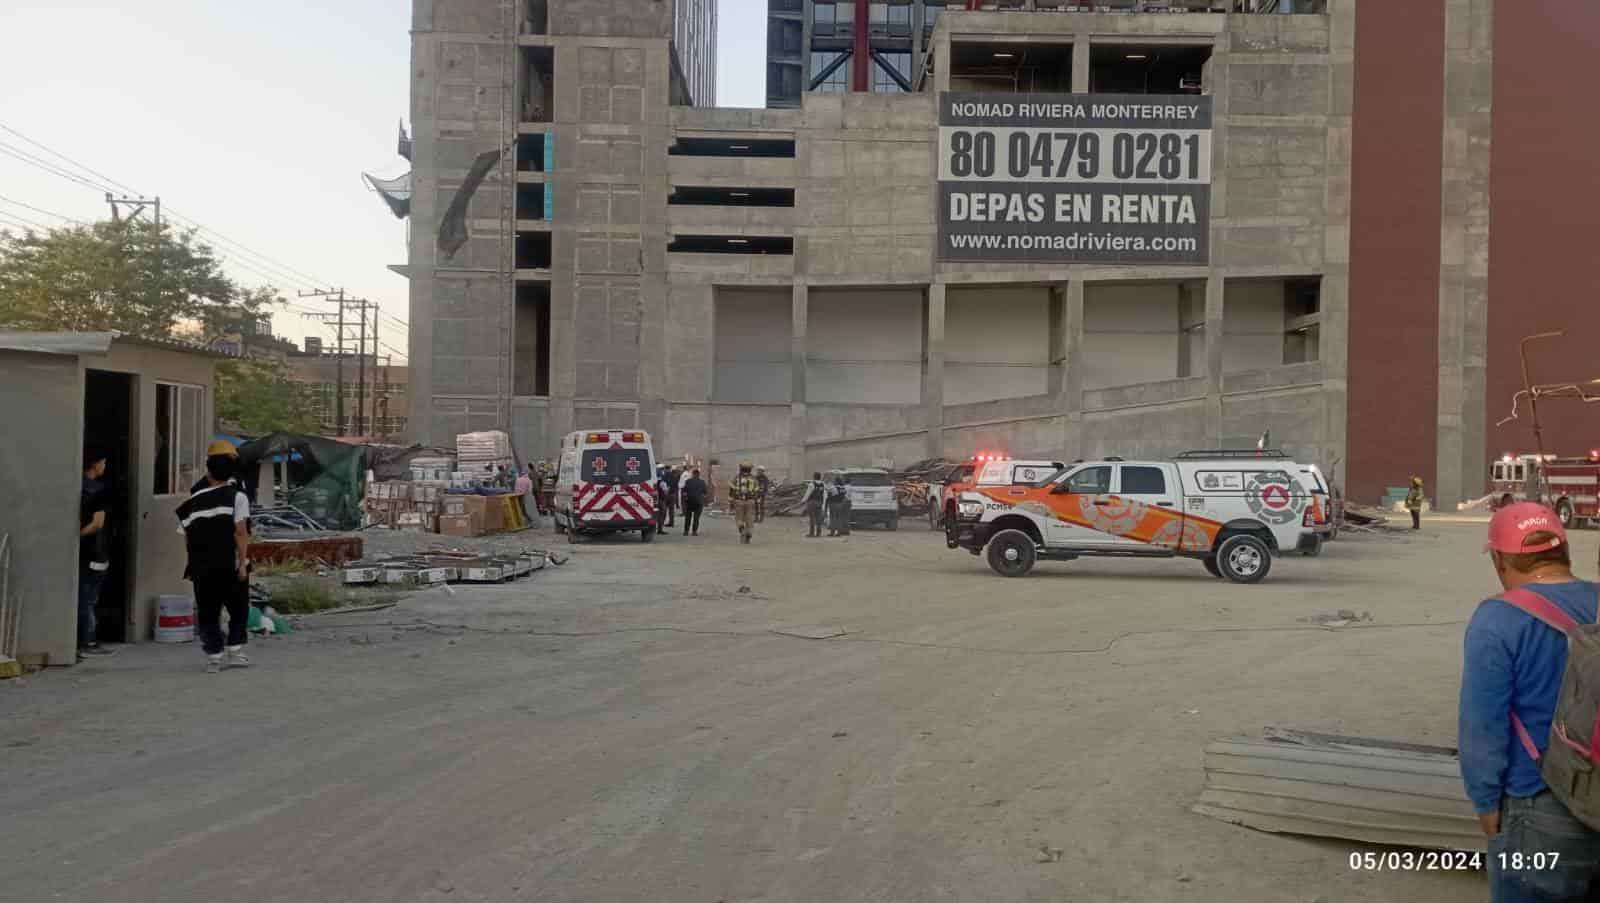 Un trabajador murió luego de caer de una altura a los 30 metros, al fallar la góndola en la cual se hallaba trabajando poniendo vistas a un edificio en construcción, en el centro de Monterrey.